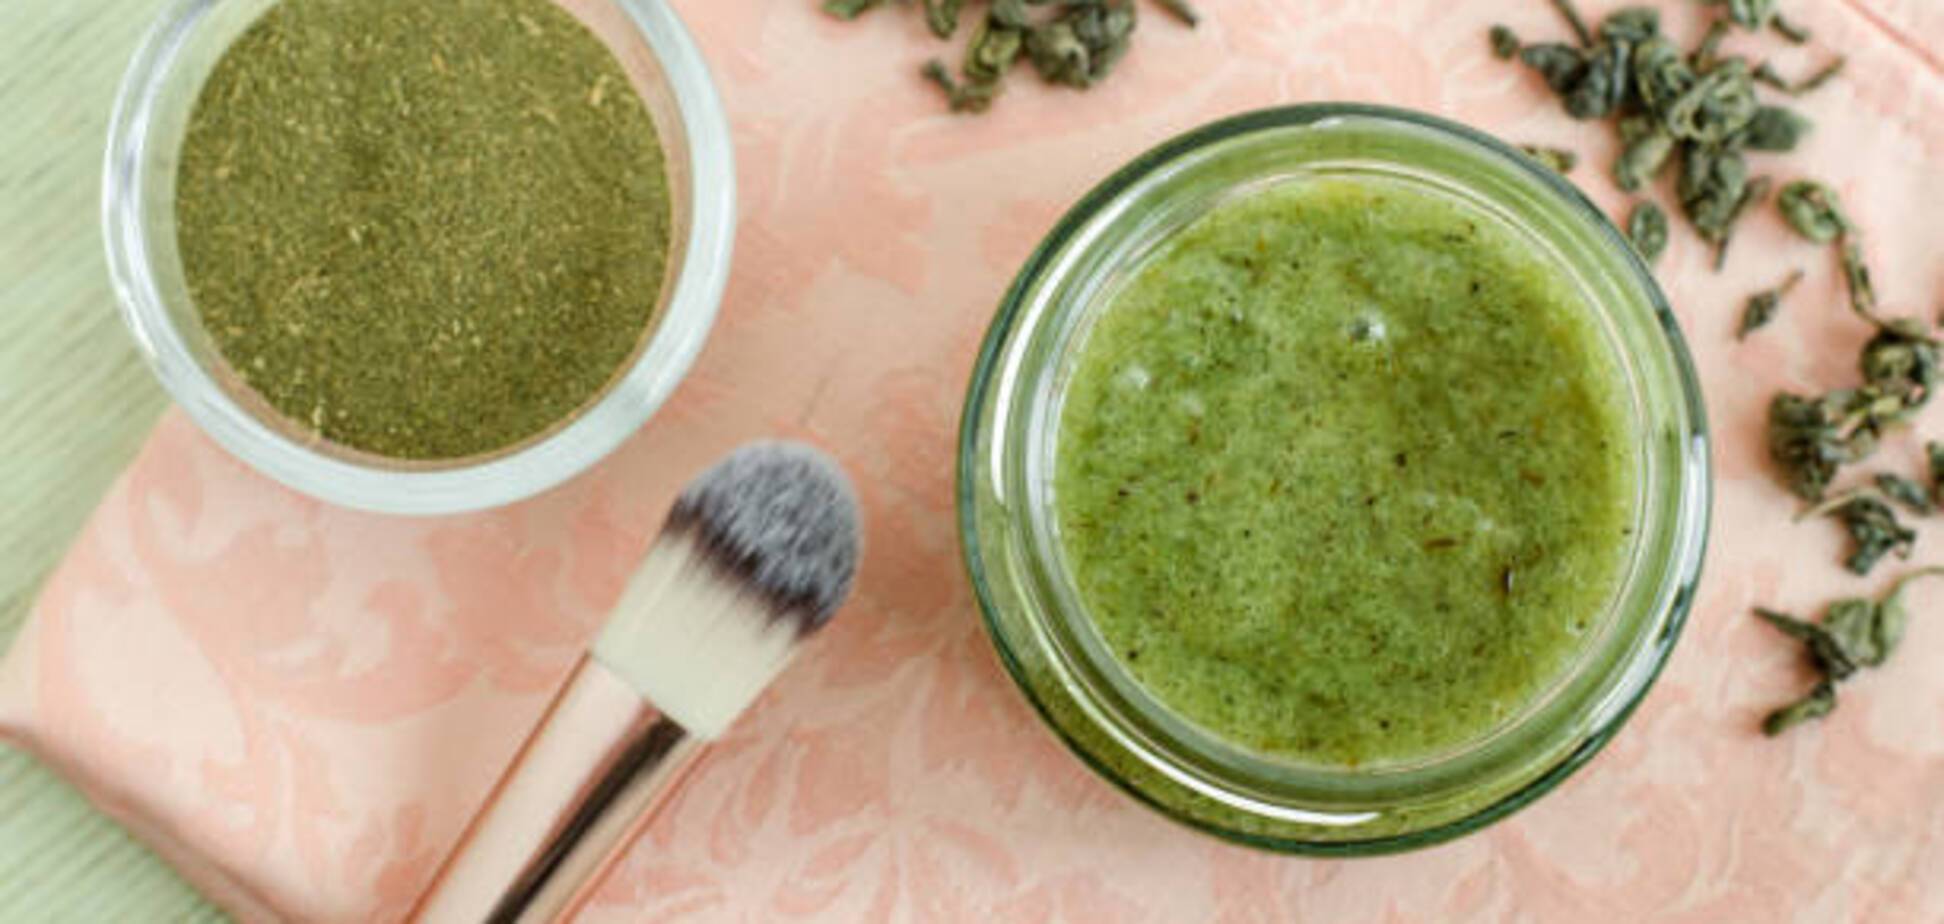 Приготування маски для обличчя із зеленого чаю: переваги та способи застосування